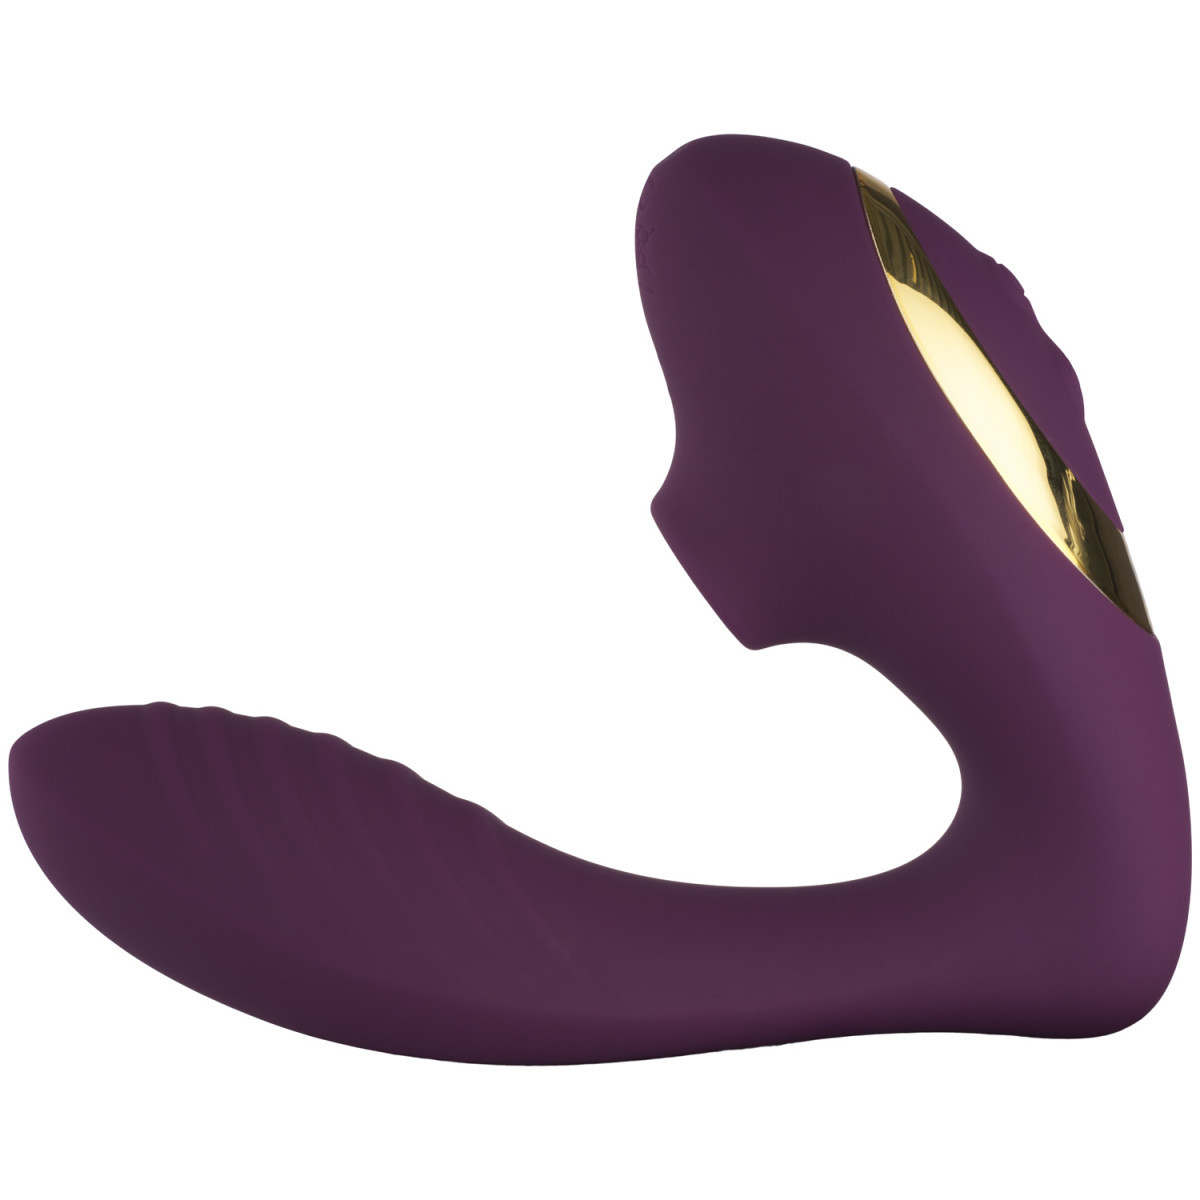 Tracey's Dog Pro 2 lilla G-punkts og klitoris vibrator i buet form på hvid baggrund